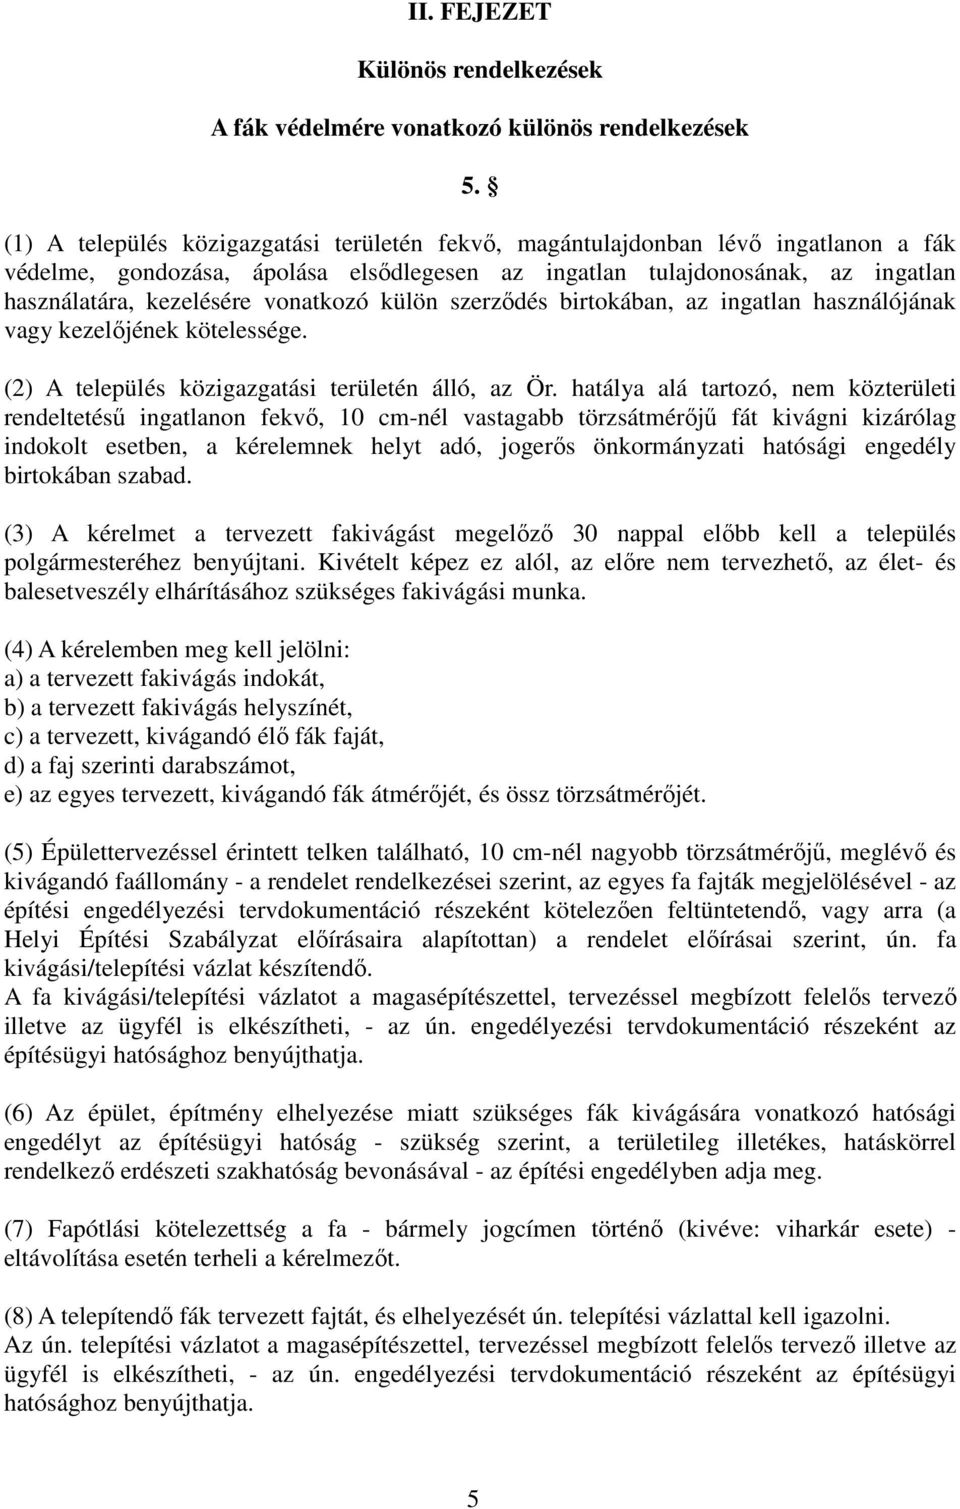 vonatkozó külön szerzıdés birtokában, az ingatlan használójának vagy kezelıjének kötelessége. (2) A település közigazgatási területén álló, az Ör.